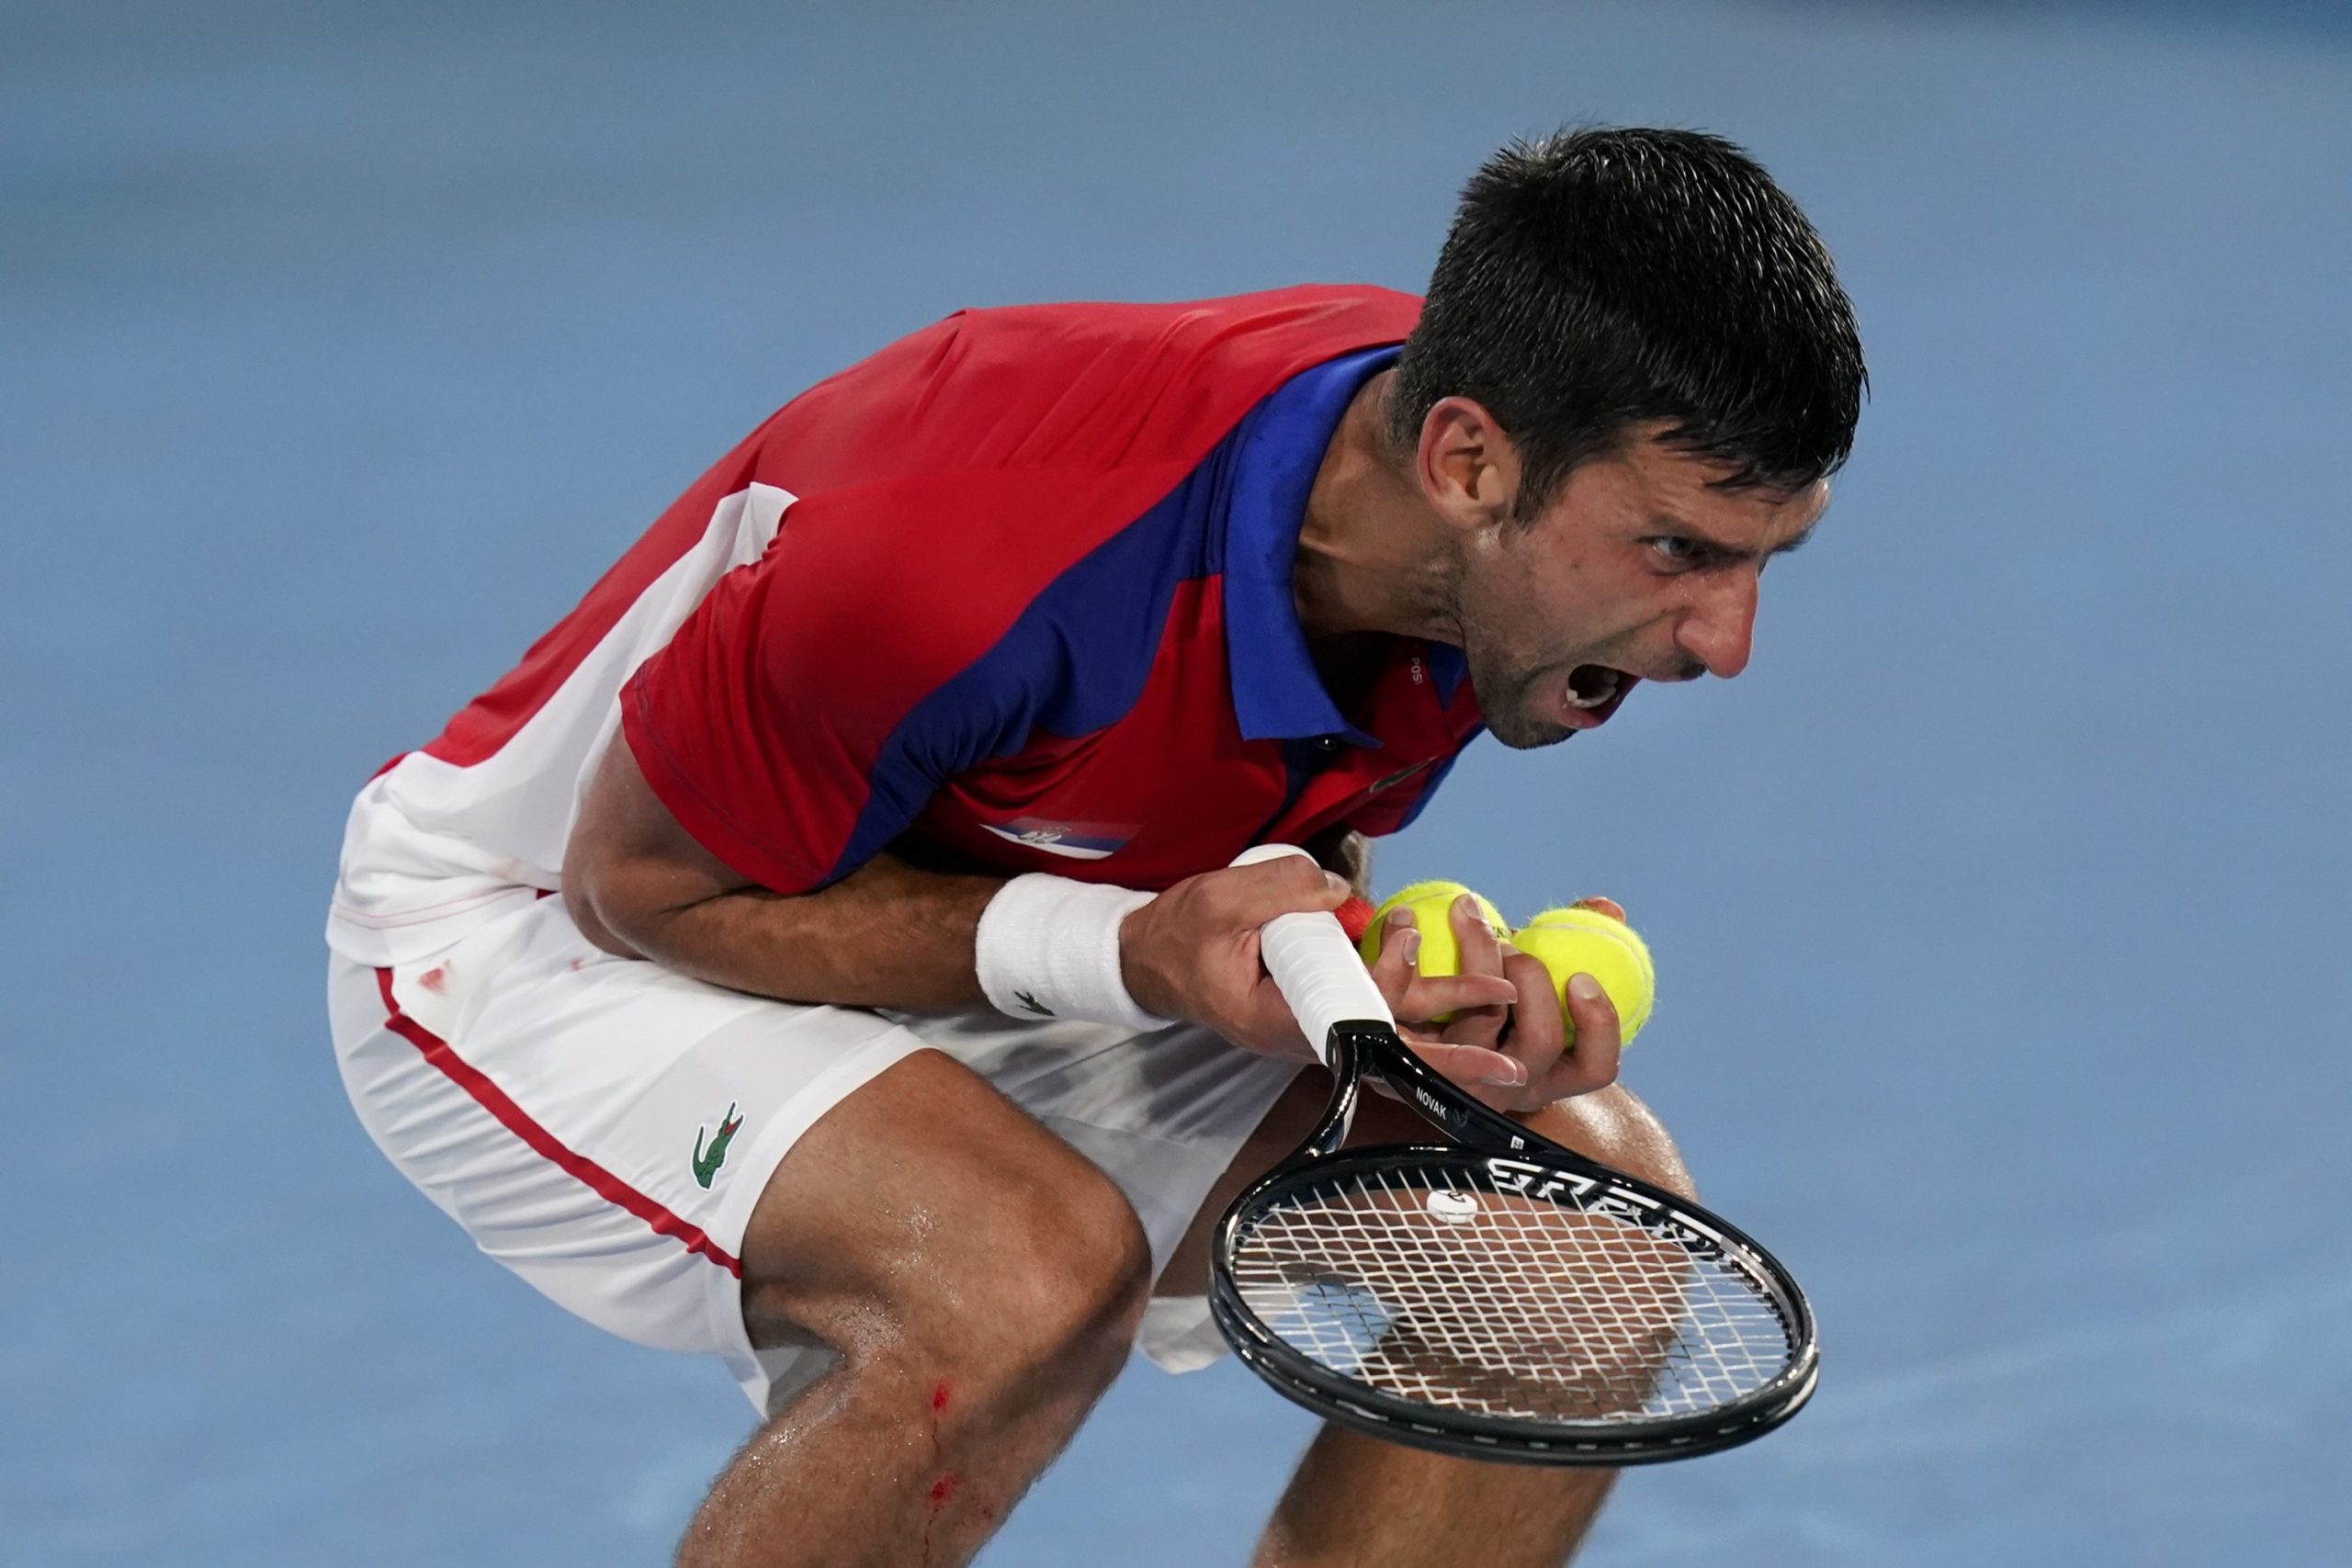 Djokovic Loses to Zverev, Fails in Golden Grand Slam Bid